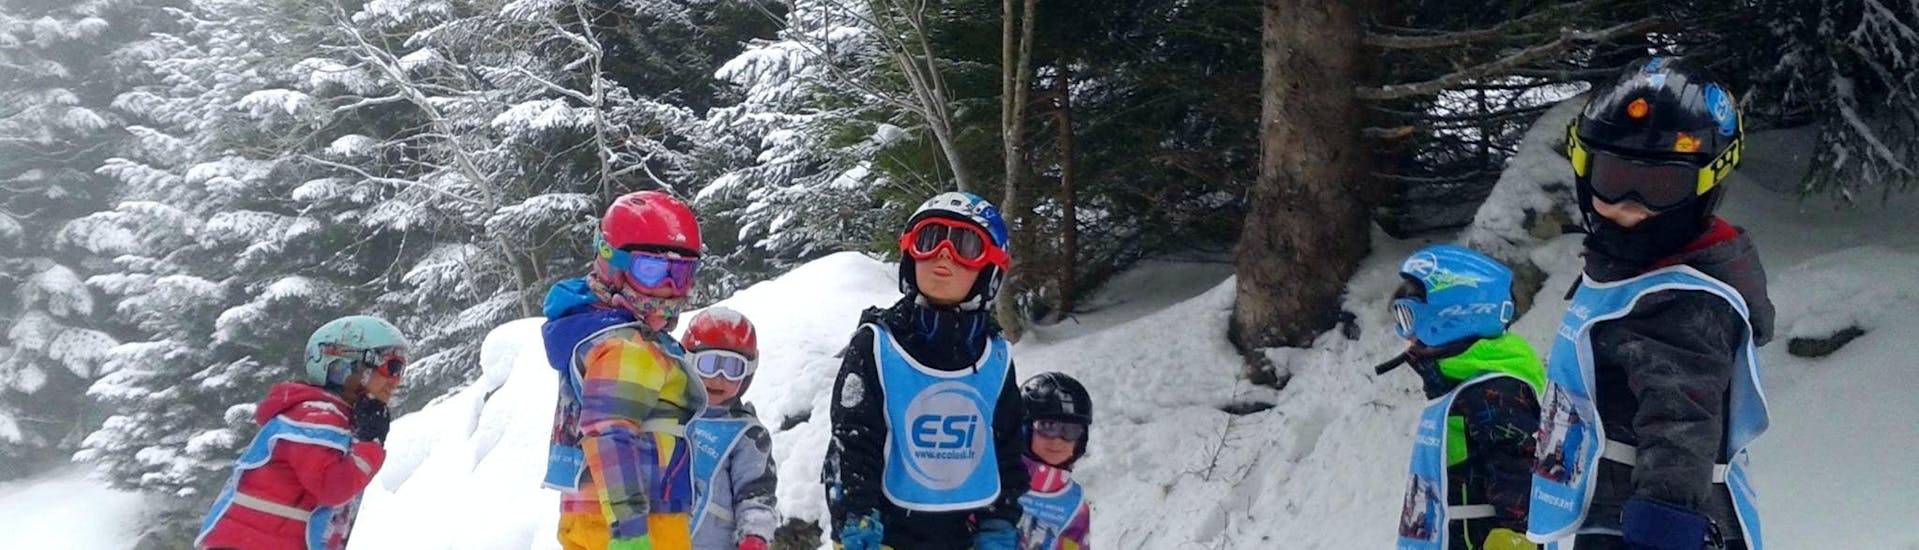 Des enfants se tiennent au milieu de la piste entourés d'arbres pendant leur Cours de ski pour Enfants (5-15 ans) - Après-midi - Débutant avec l'école de ski ESI Ecoloski Barèges.